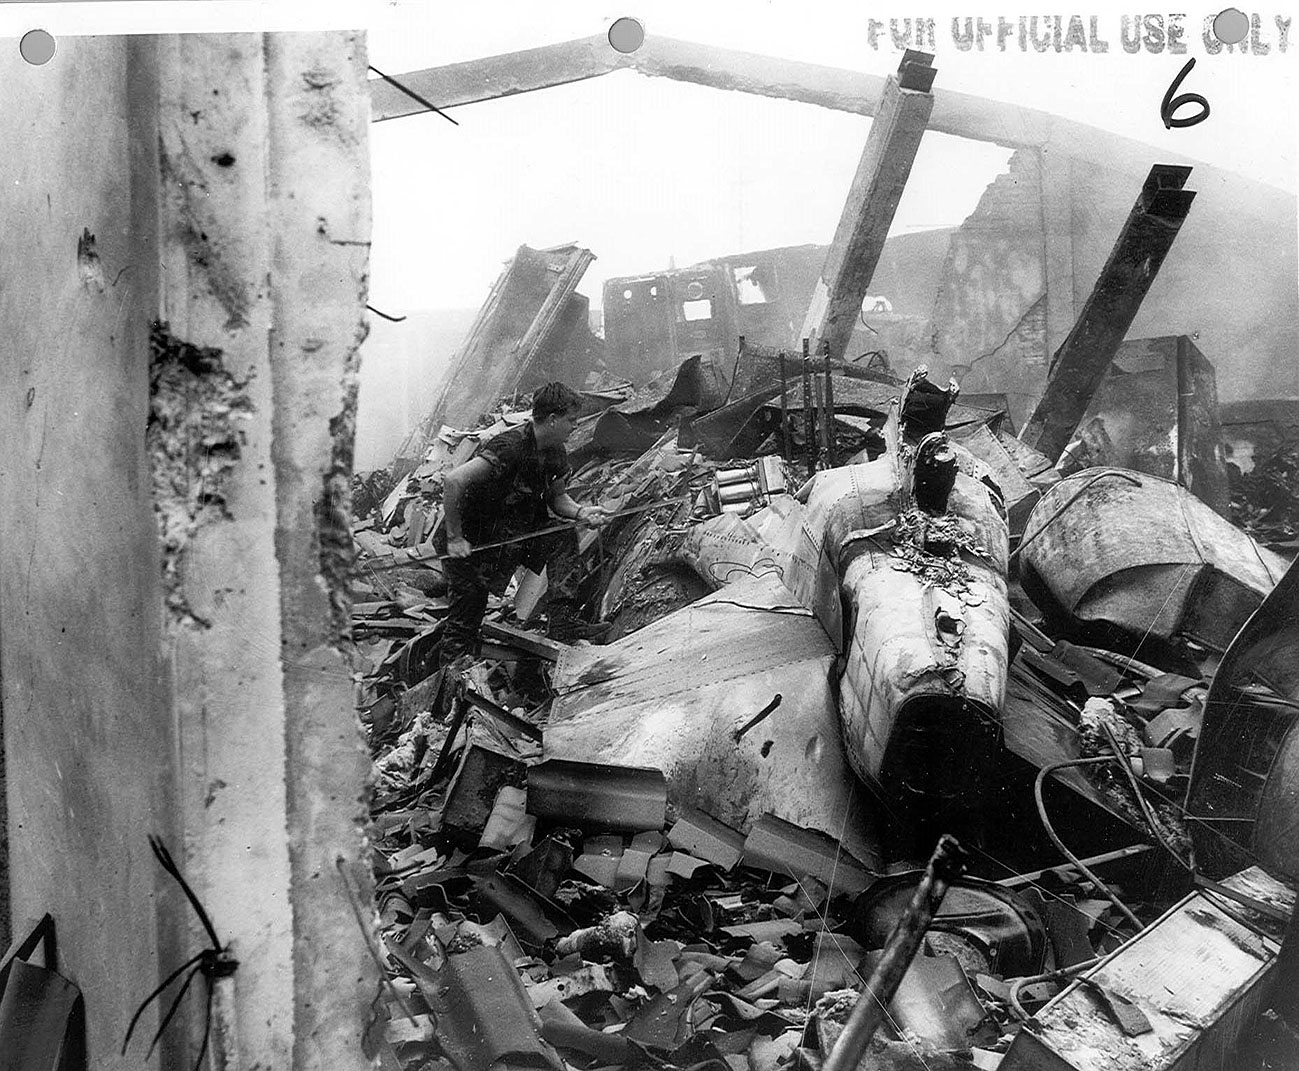 F4 Crash Photo - Udorn RTAFB - April 10, 1970